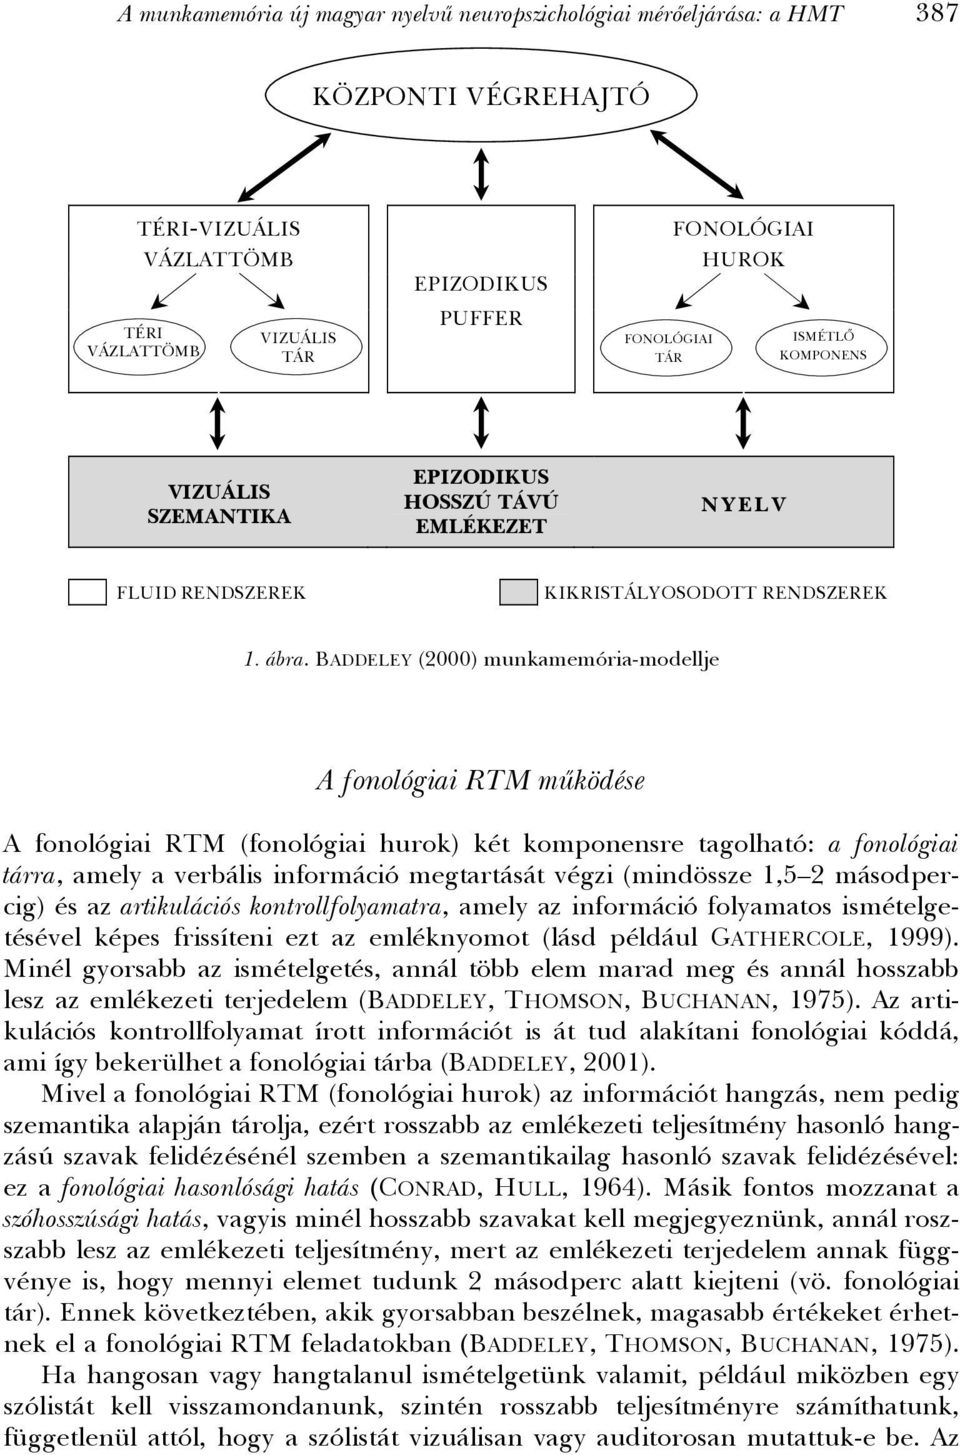 BADDELEY (2000) munkamemória-modellje A fonológiai RTM működése A fonológiai RTM (fonológiai hurok) két komponensre tagolható: a fonológiai tárra, amely a verbális információ megtartását végzi